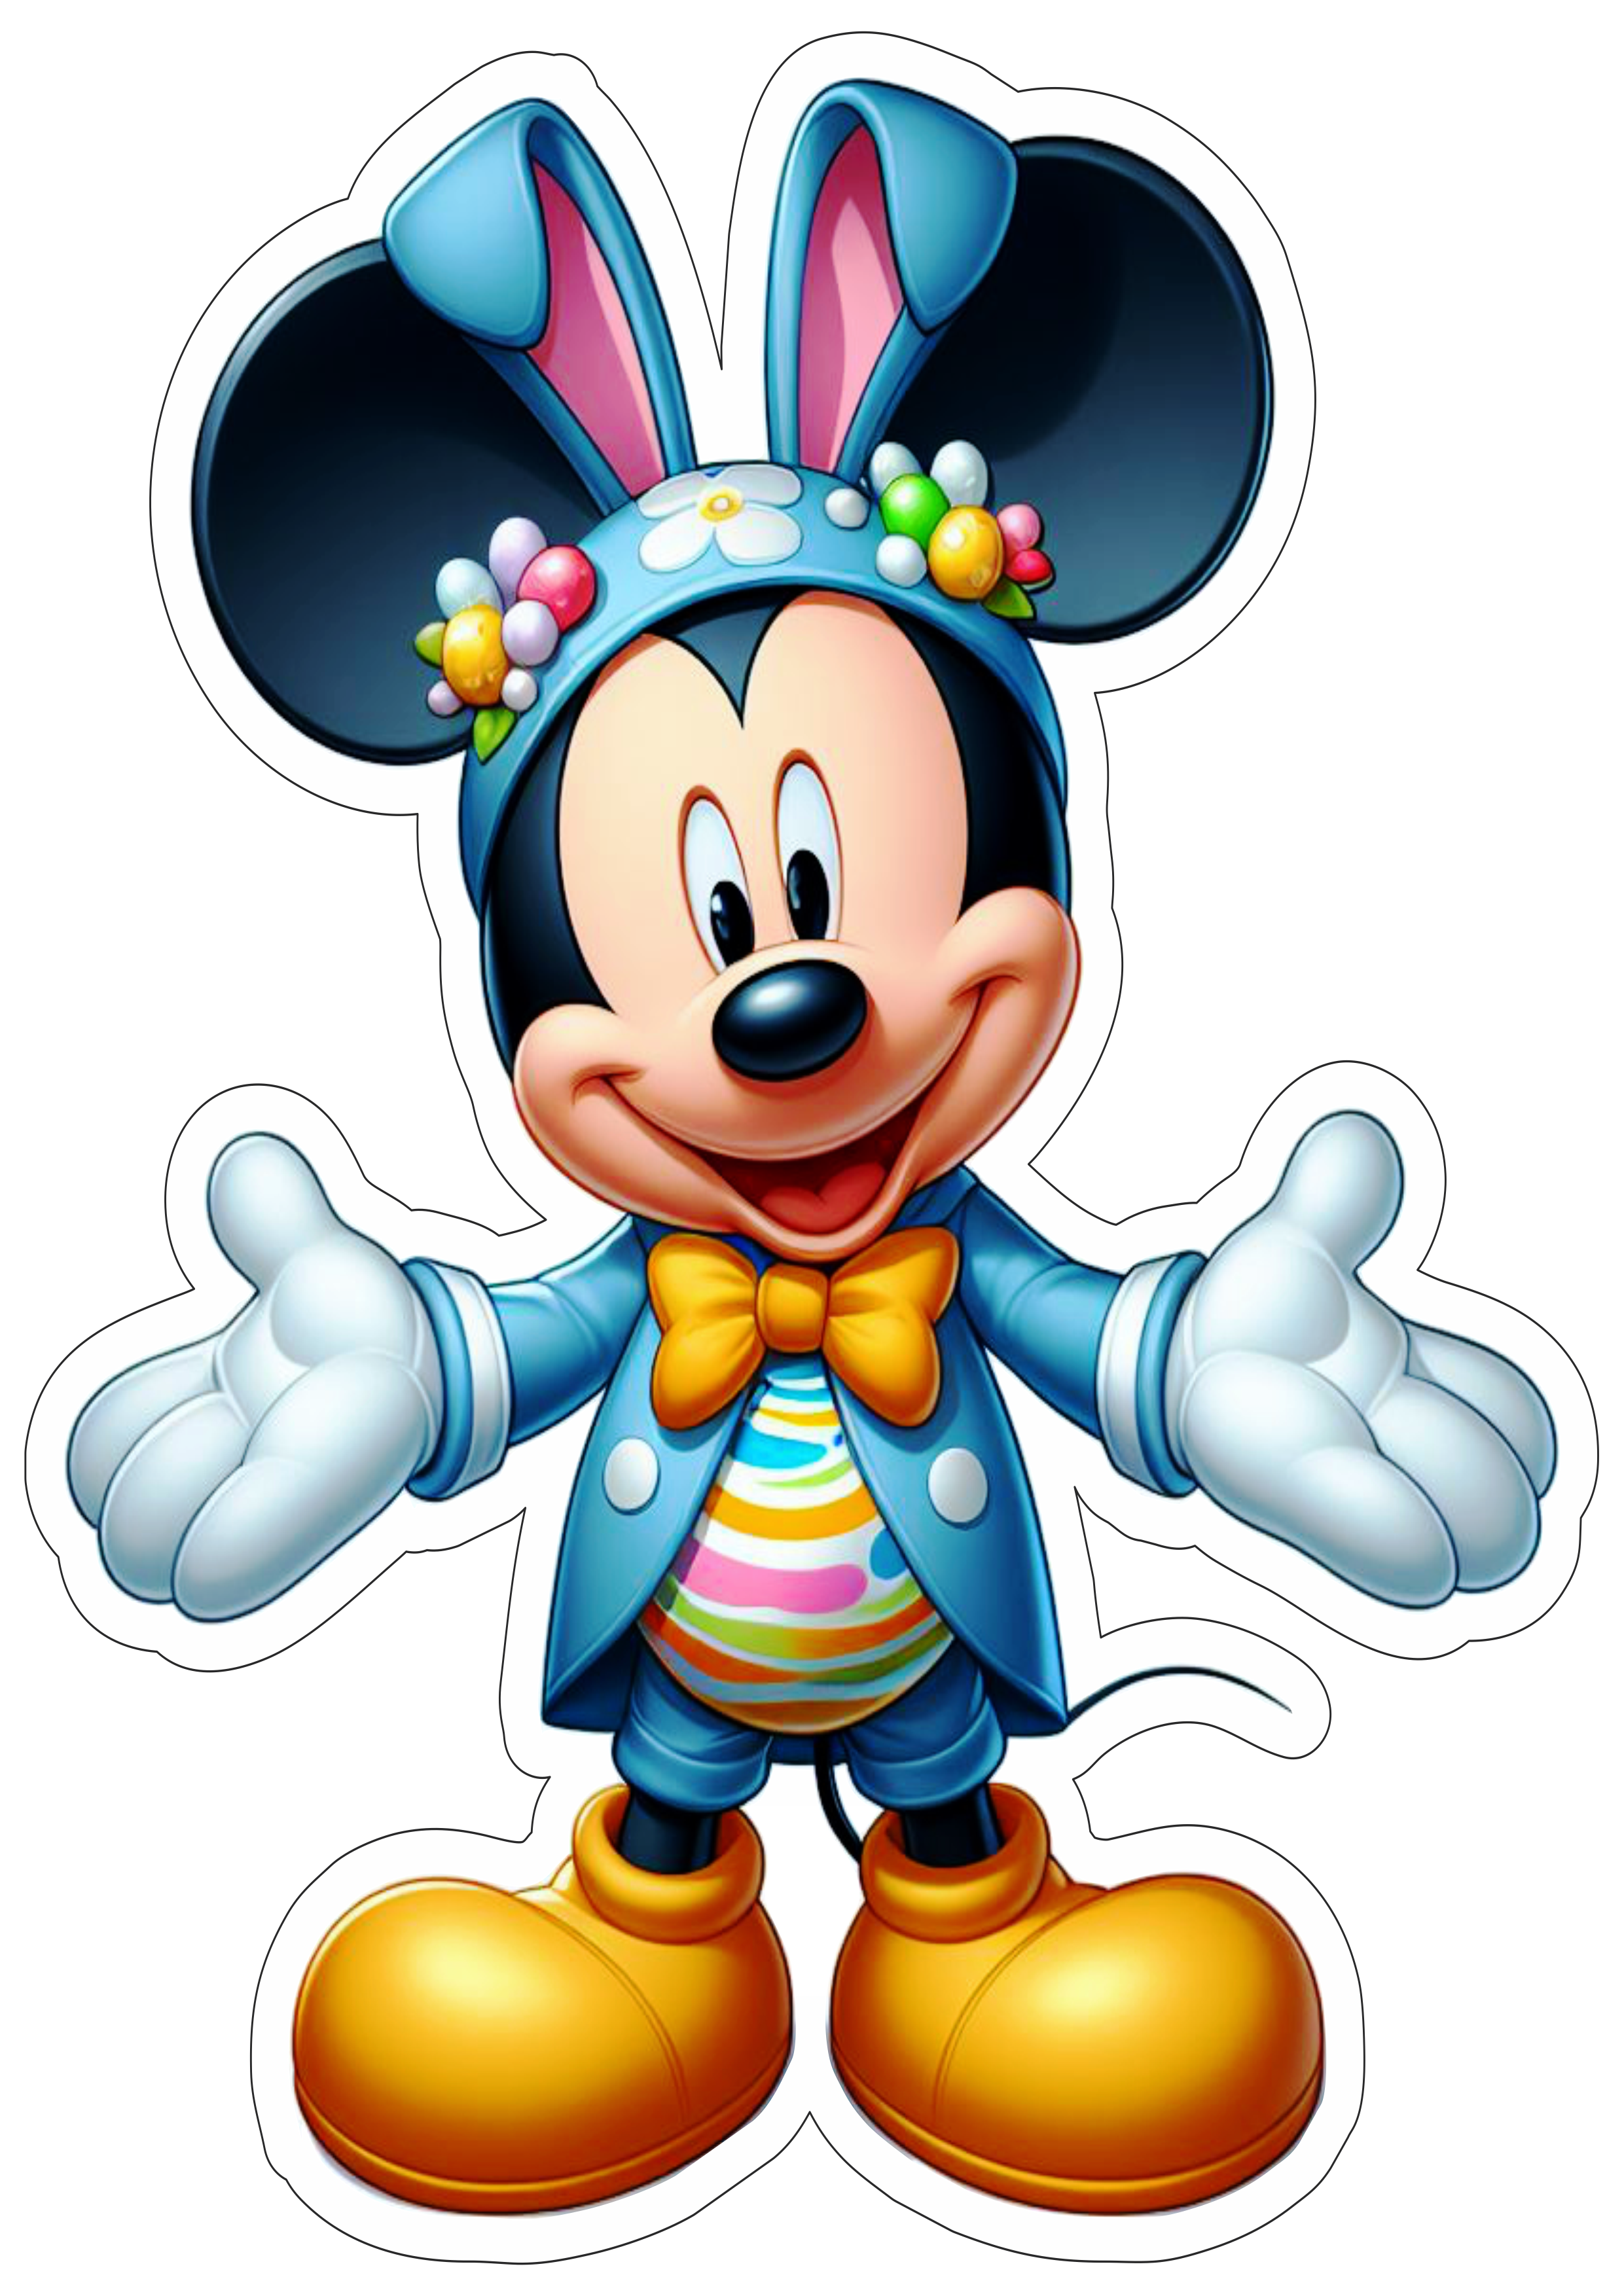 Mickey Mouse coelhinho da páscoa artes gráficas fundo transparente com contorno desenho infantil ilustração png